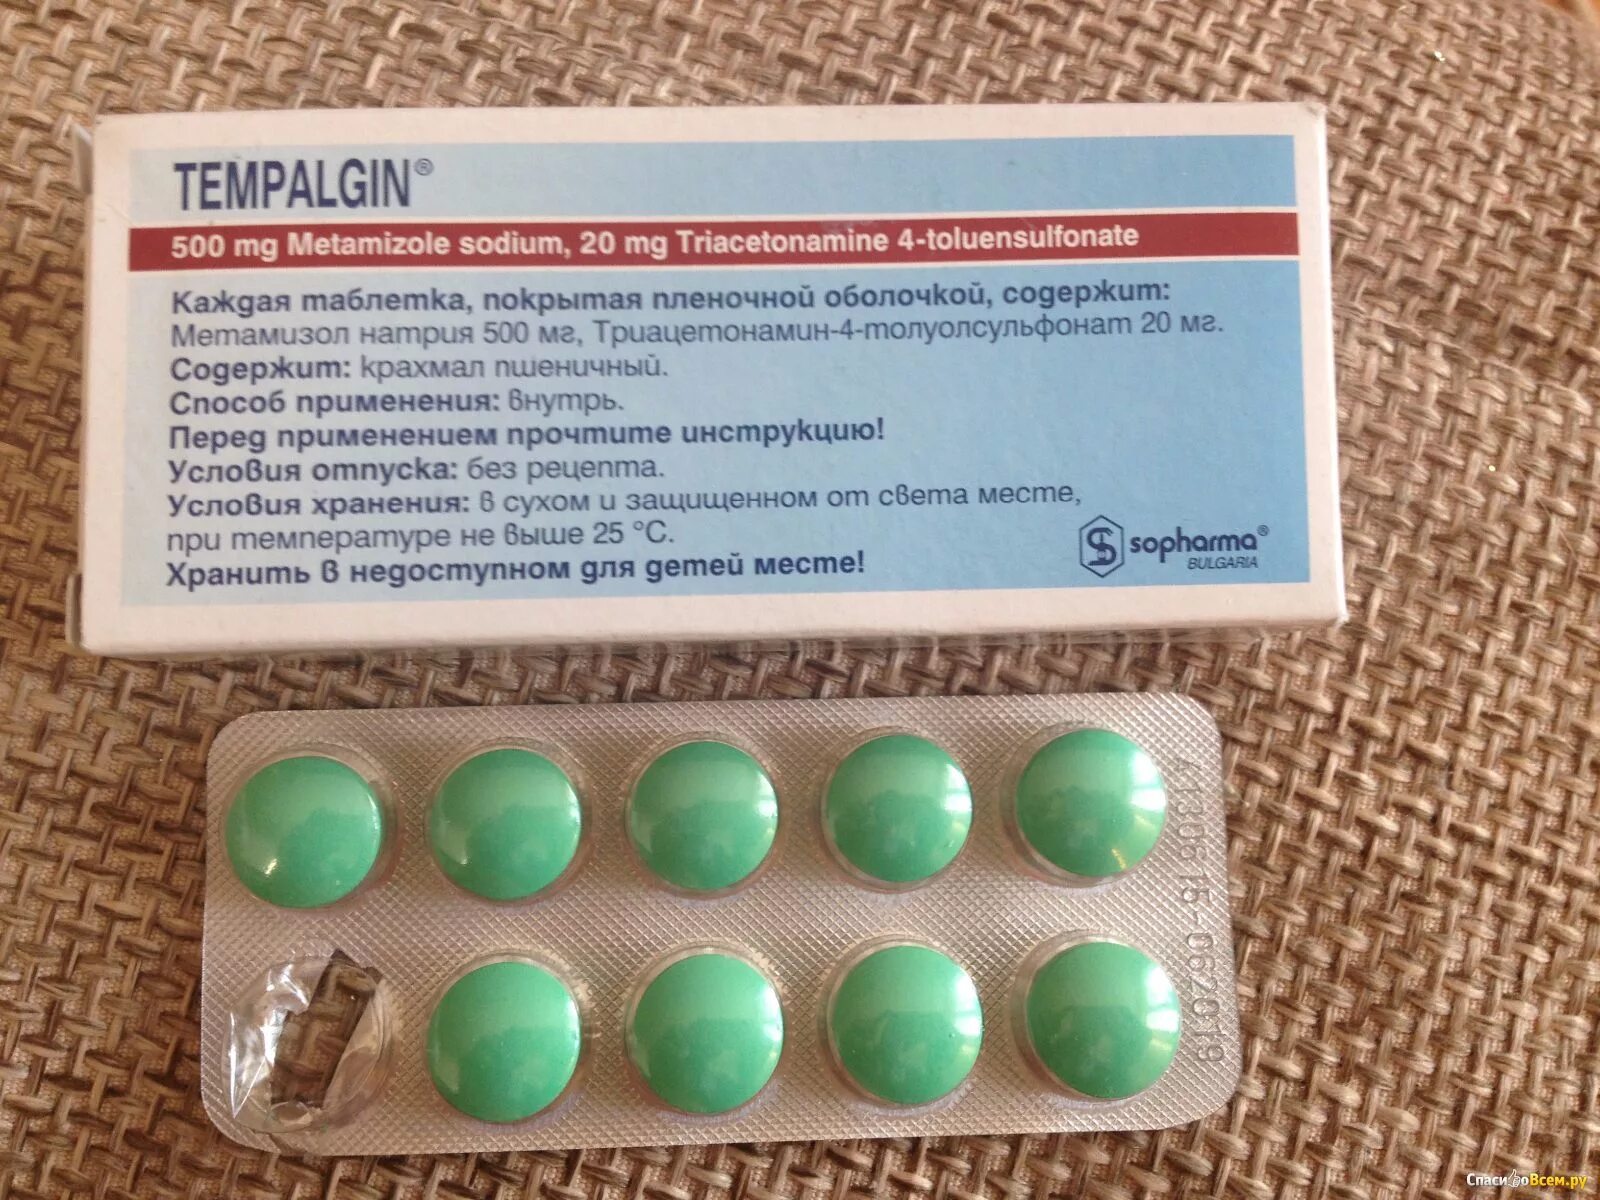 Зеленые таблетки обезболивающие Темпалгин. Зеленые табеткиобезболивающие. Зеленые круглые таблетки. Зелёные таблетки обезболв.